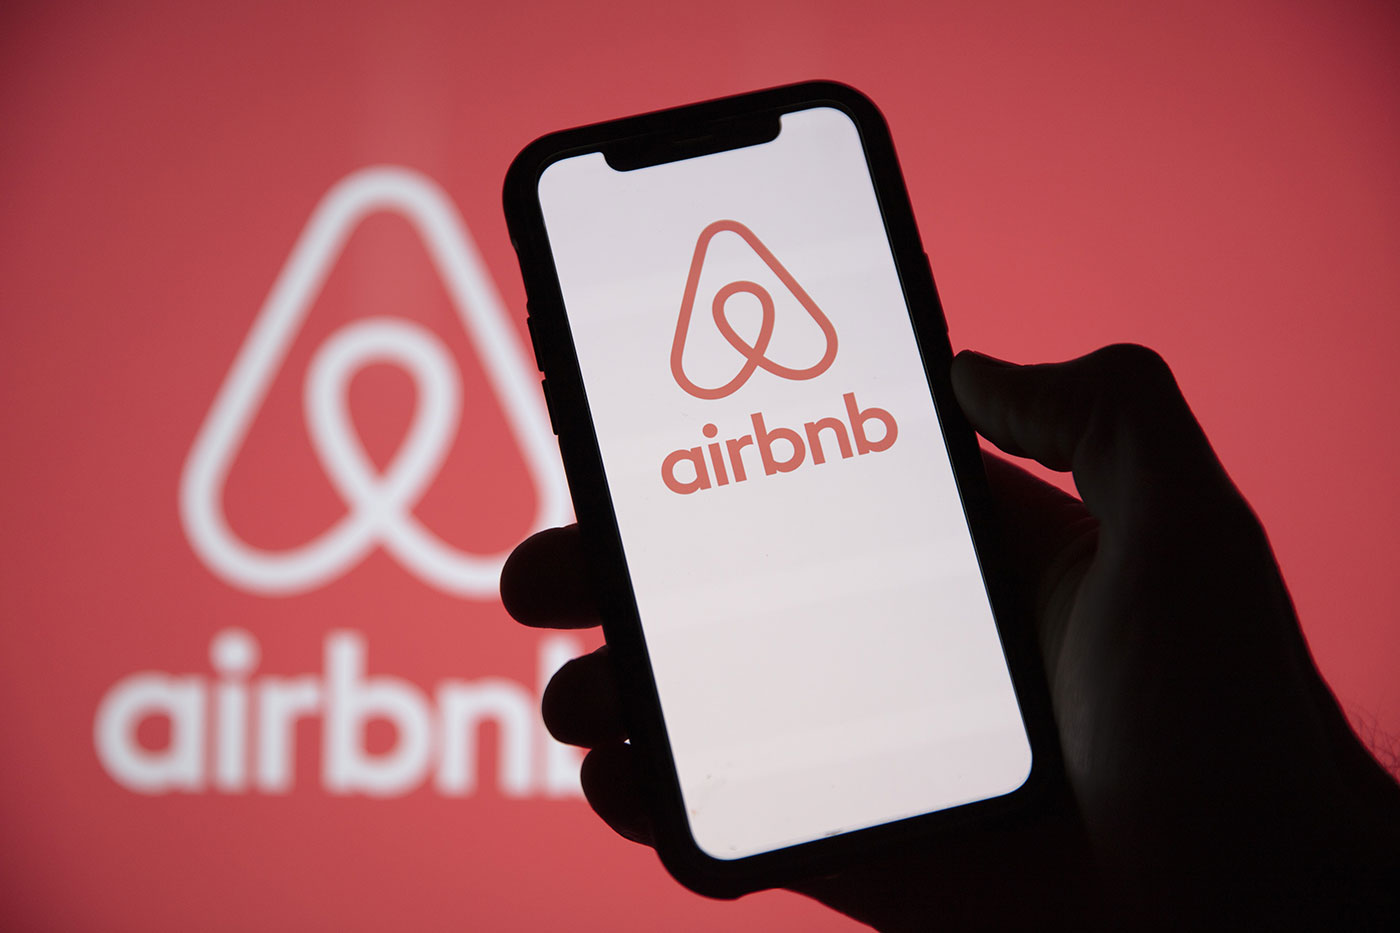 Le patron d’Airbnb met en location une chambre dans sa propre maison